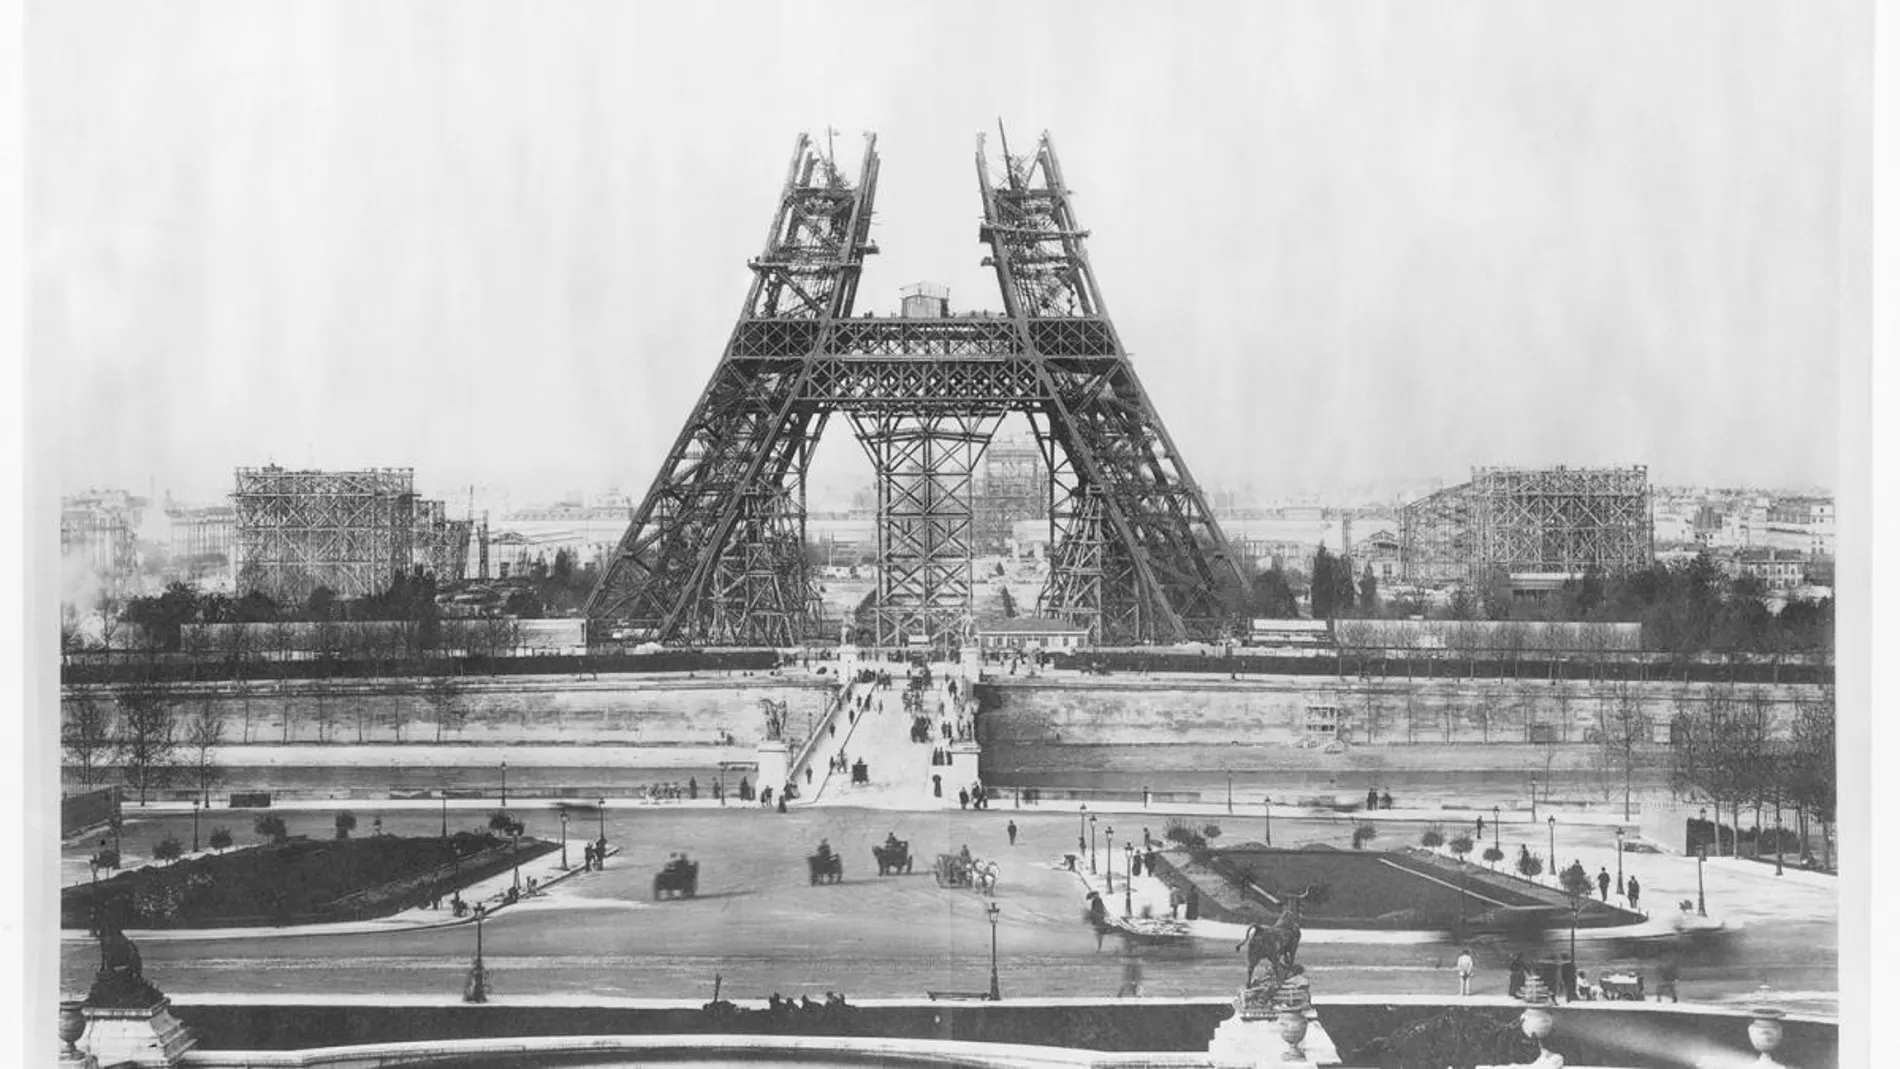 Efemérides de hoy 31 de marzo de 2022: el 31 de marzo de 1889 finalizó la construcción de la Torre Eiffel, uno de los monumentos más emblemáticos de París.